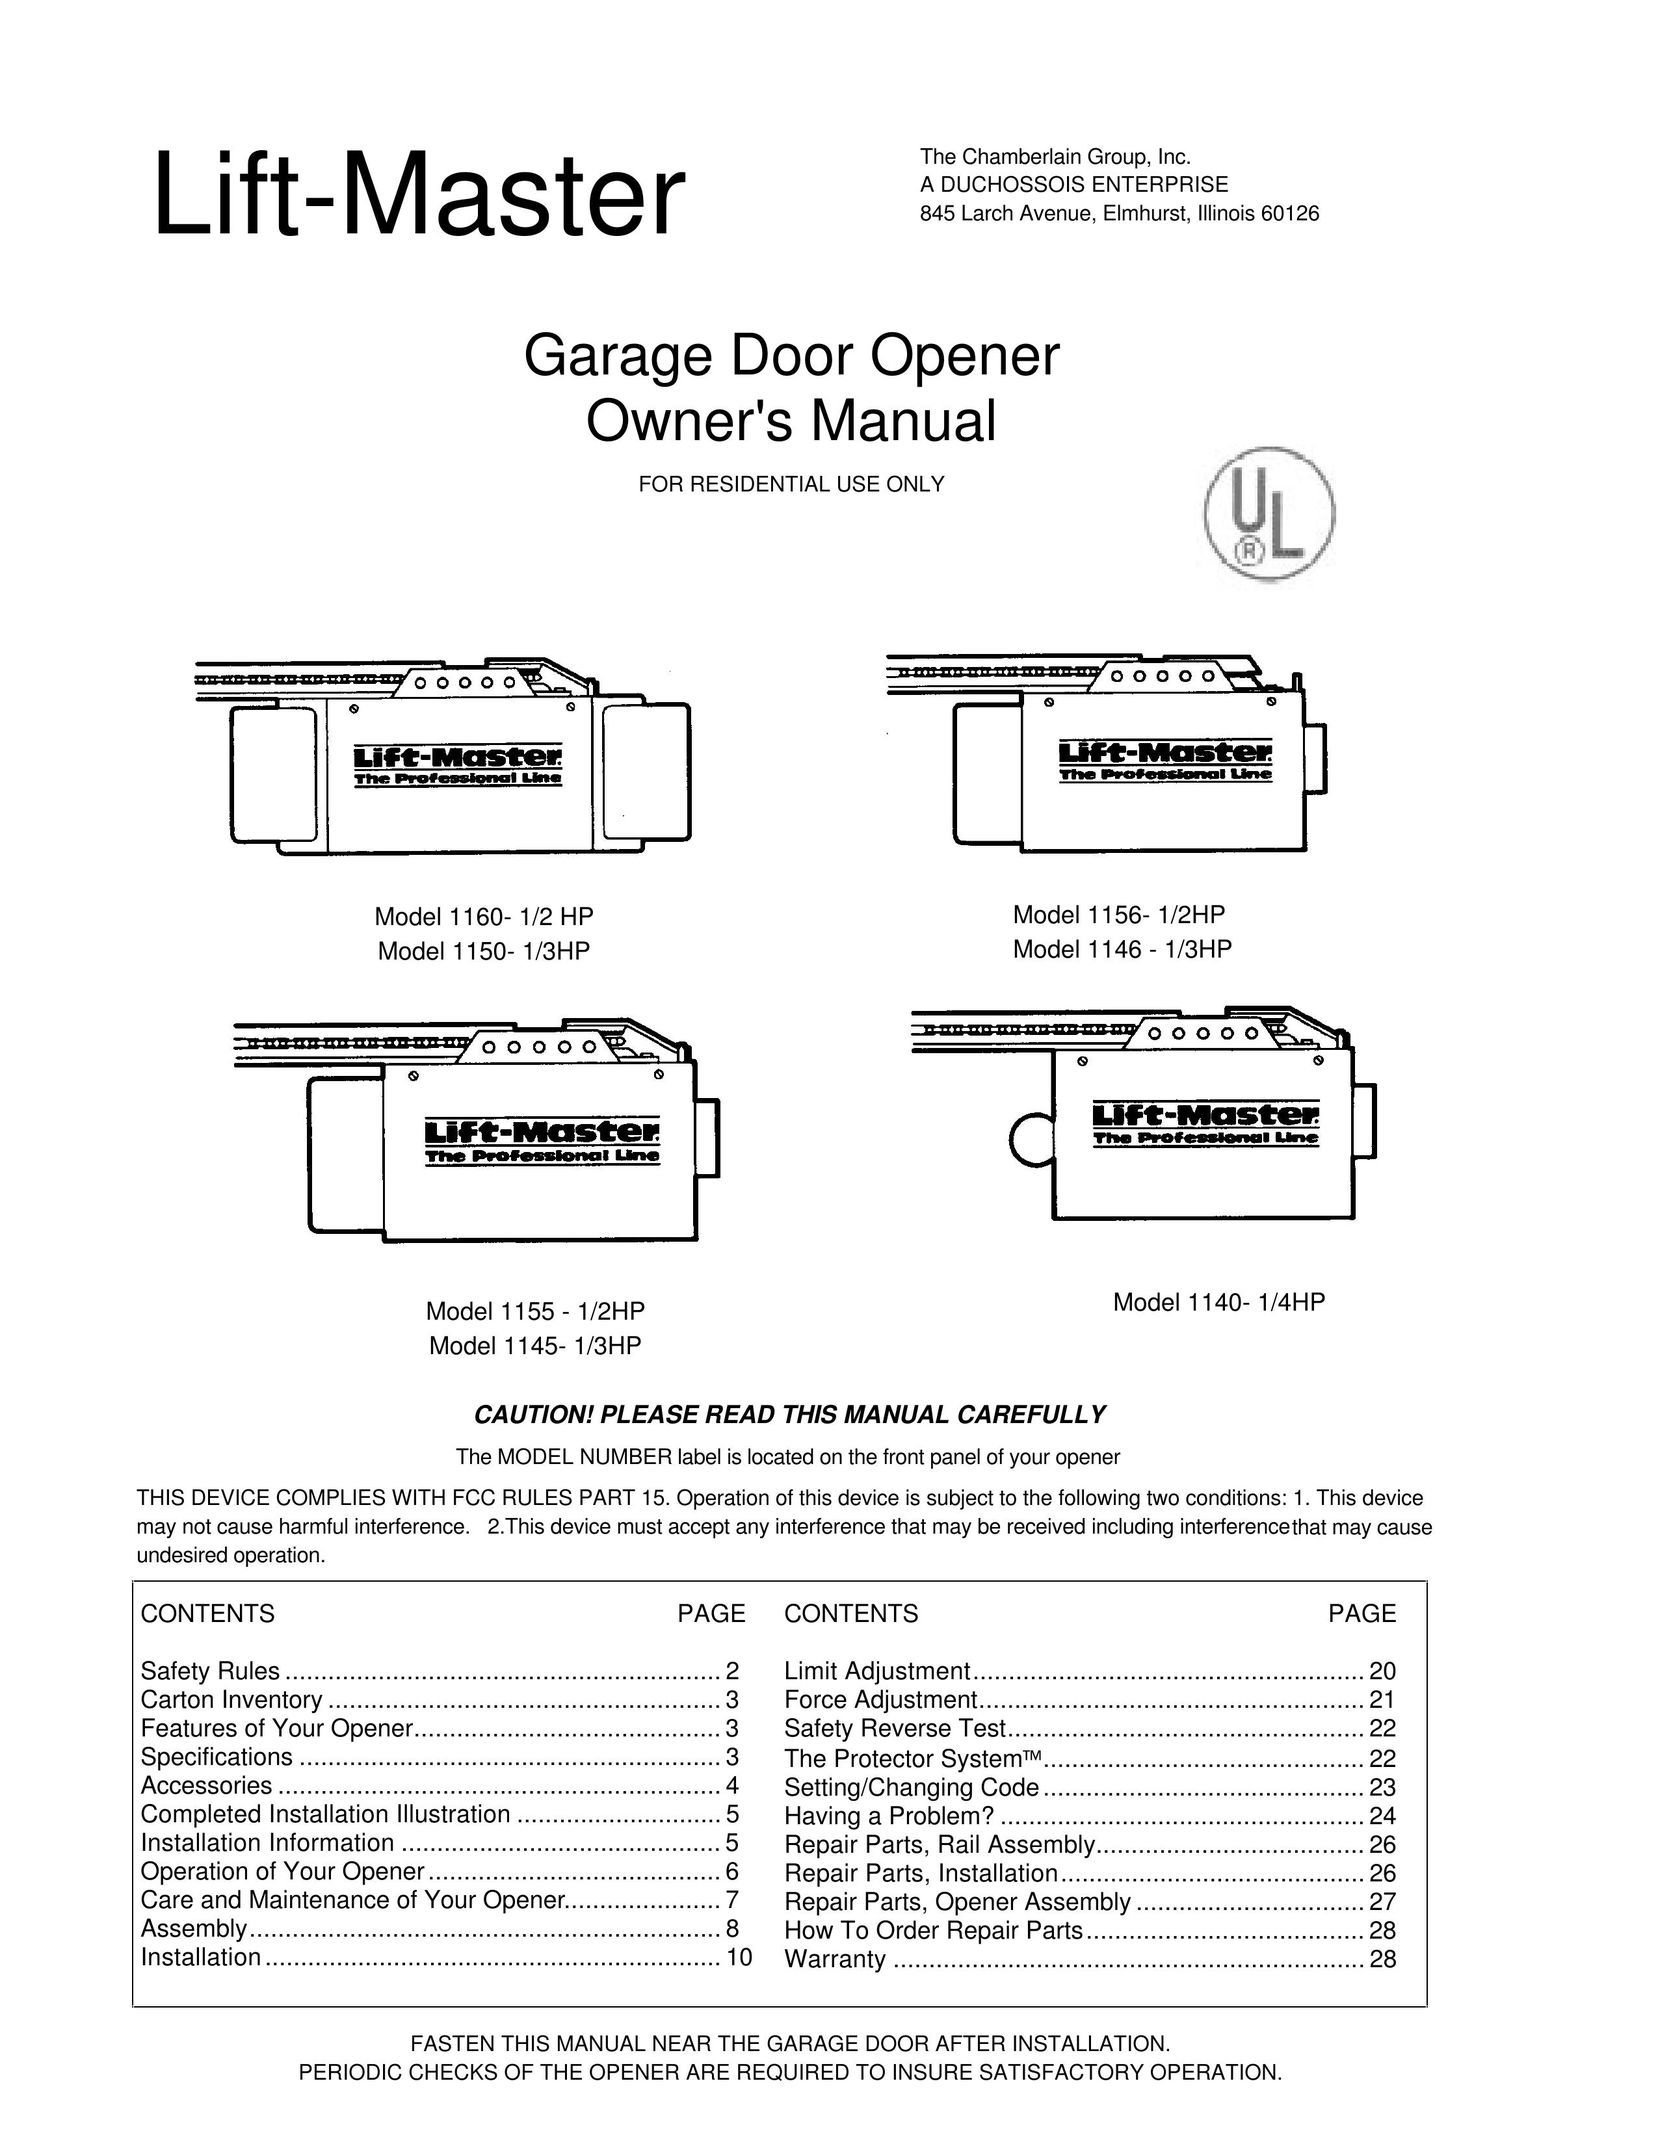 Chamberlain 1146 - 1/3HP Garage Door Opener User Manual